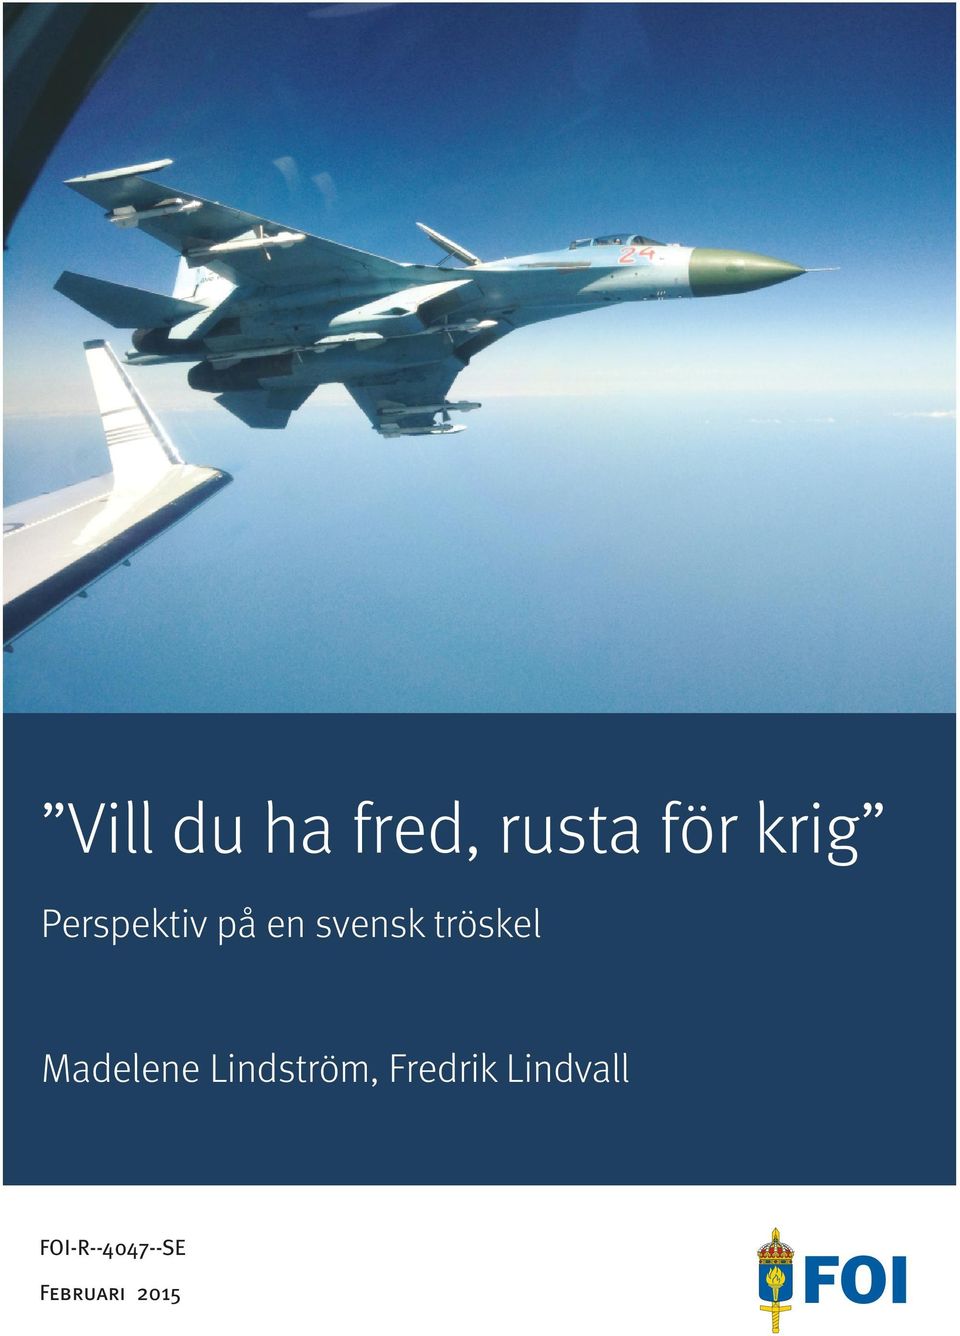 Studien syftar till att belysa hur begreph]l tröskel kan förstås samt analysera hur den svenska tröskeln för att kunna stå emot ett väpnat angrepp och militära påtrycknin_yj kan höjas.